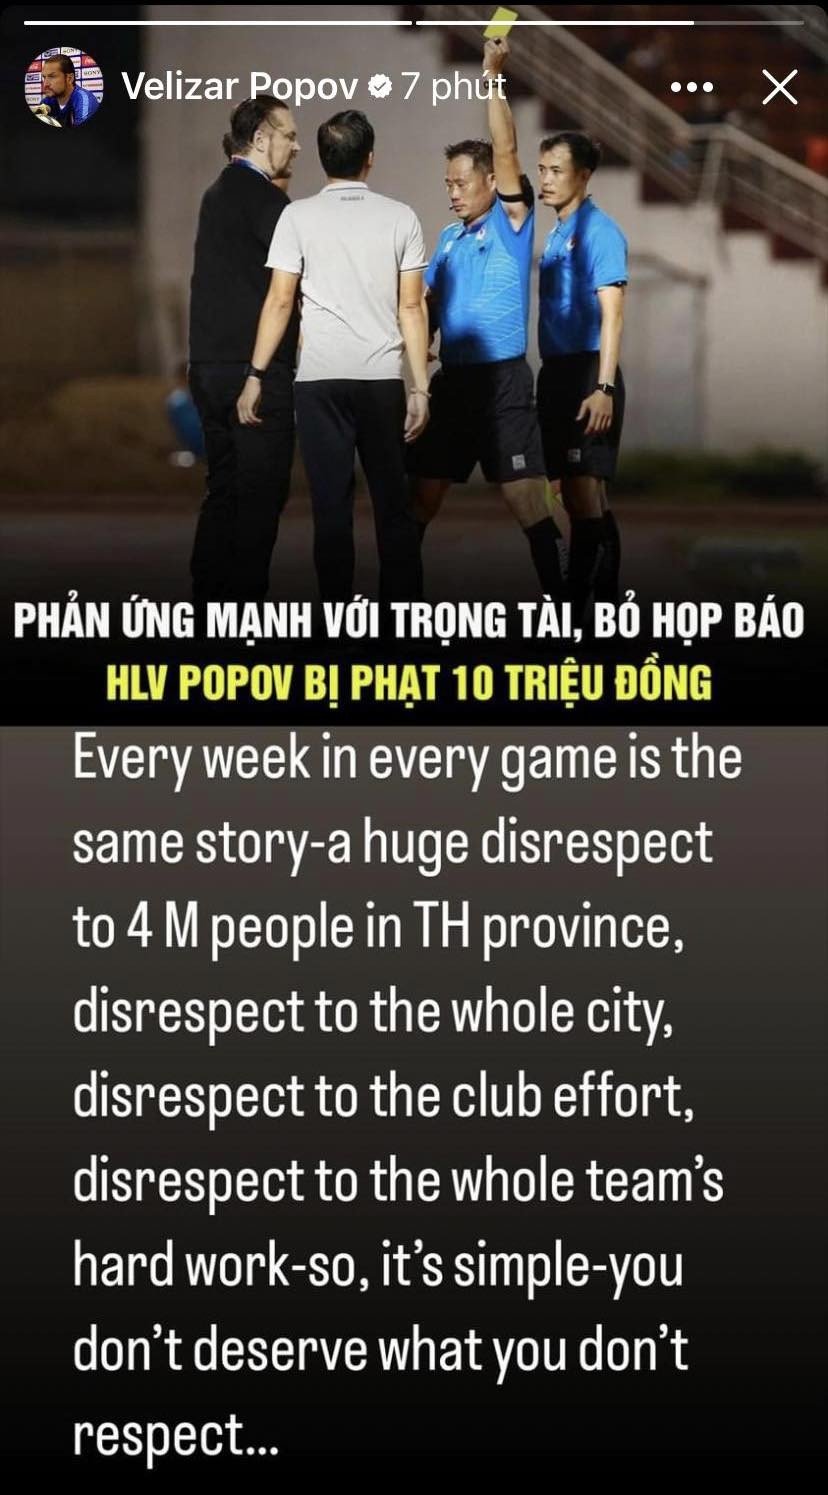 HLV châu Âu tại V-League phẫn nộ vì bị phạt, tuyên bố 4 triệu người Thanh Hóa không được tôn trọng - Ảnh 2.